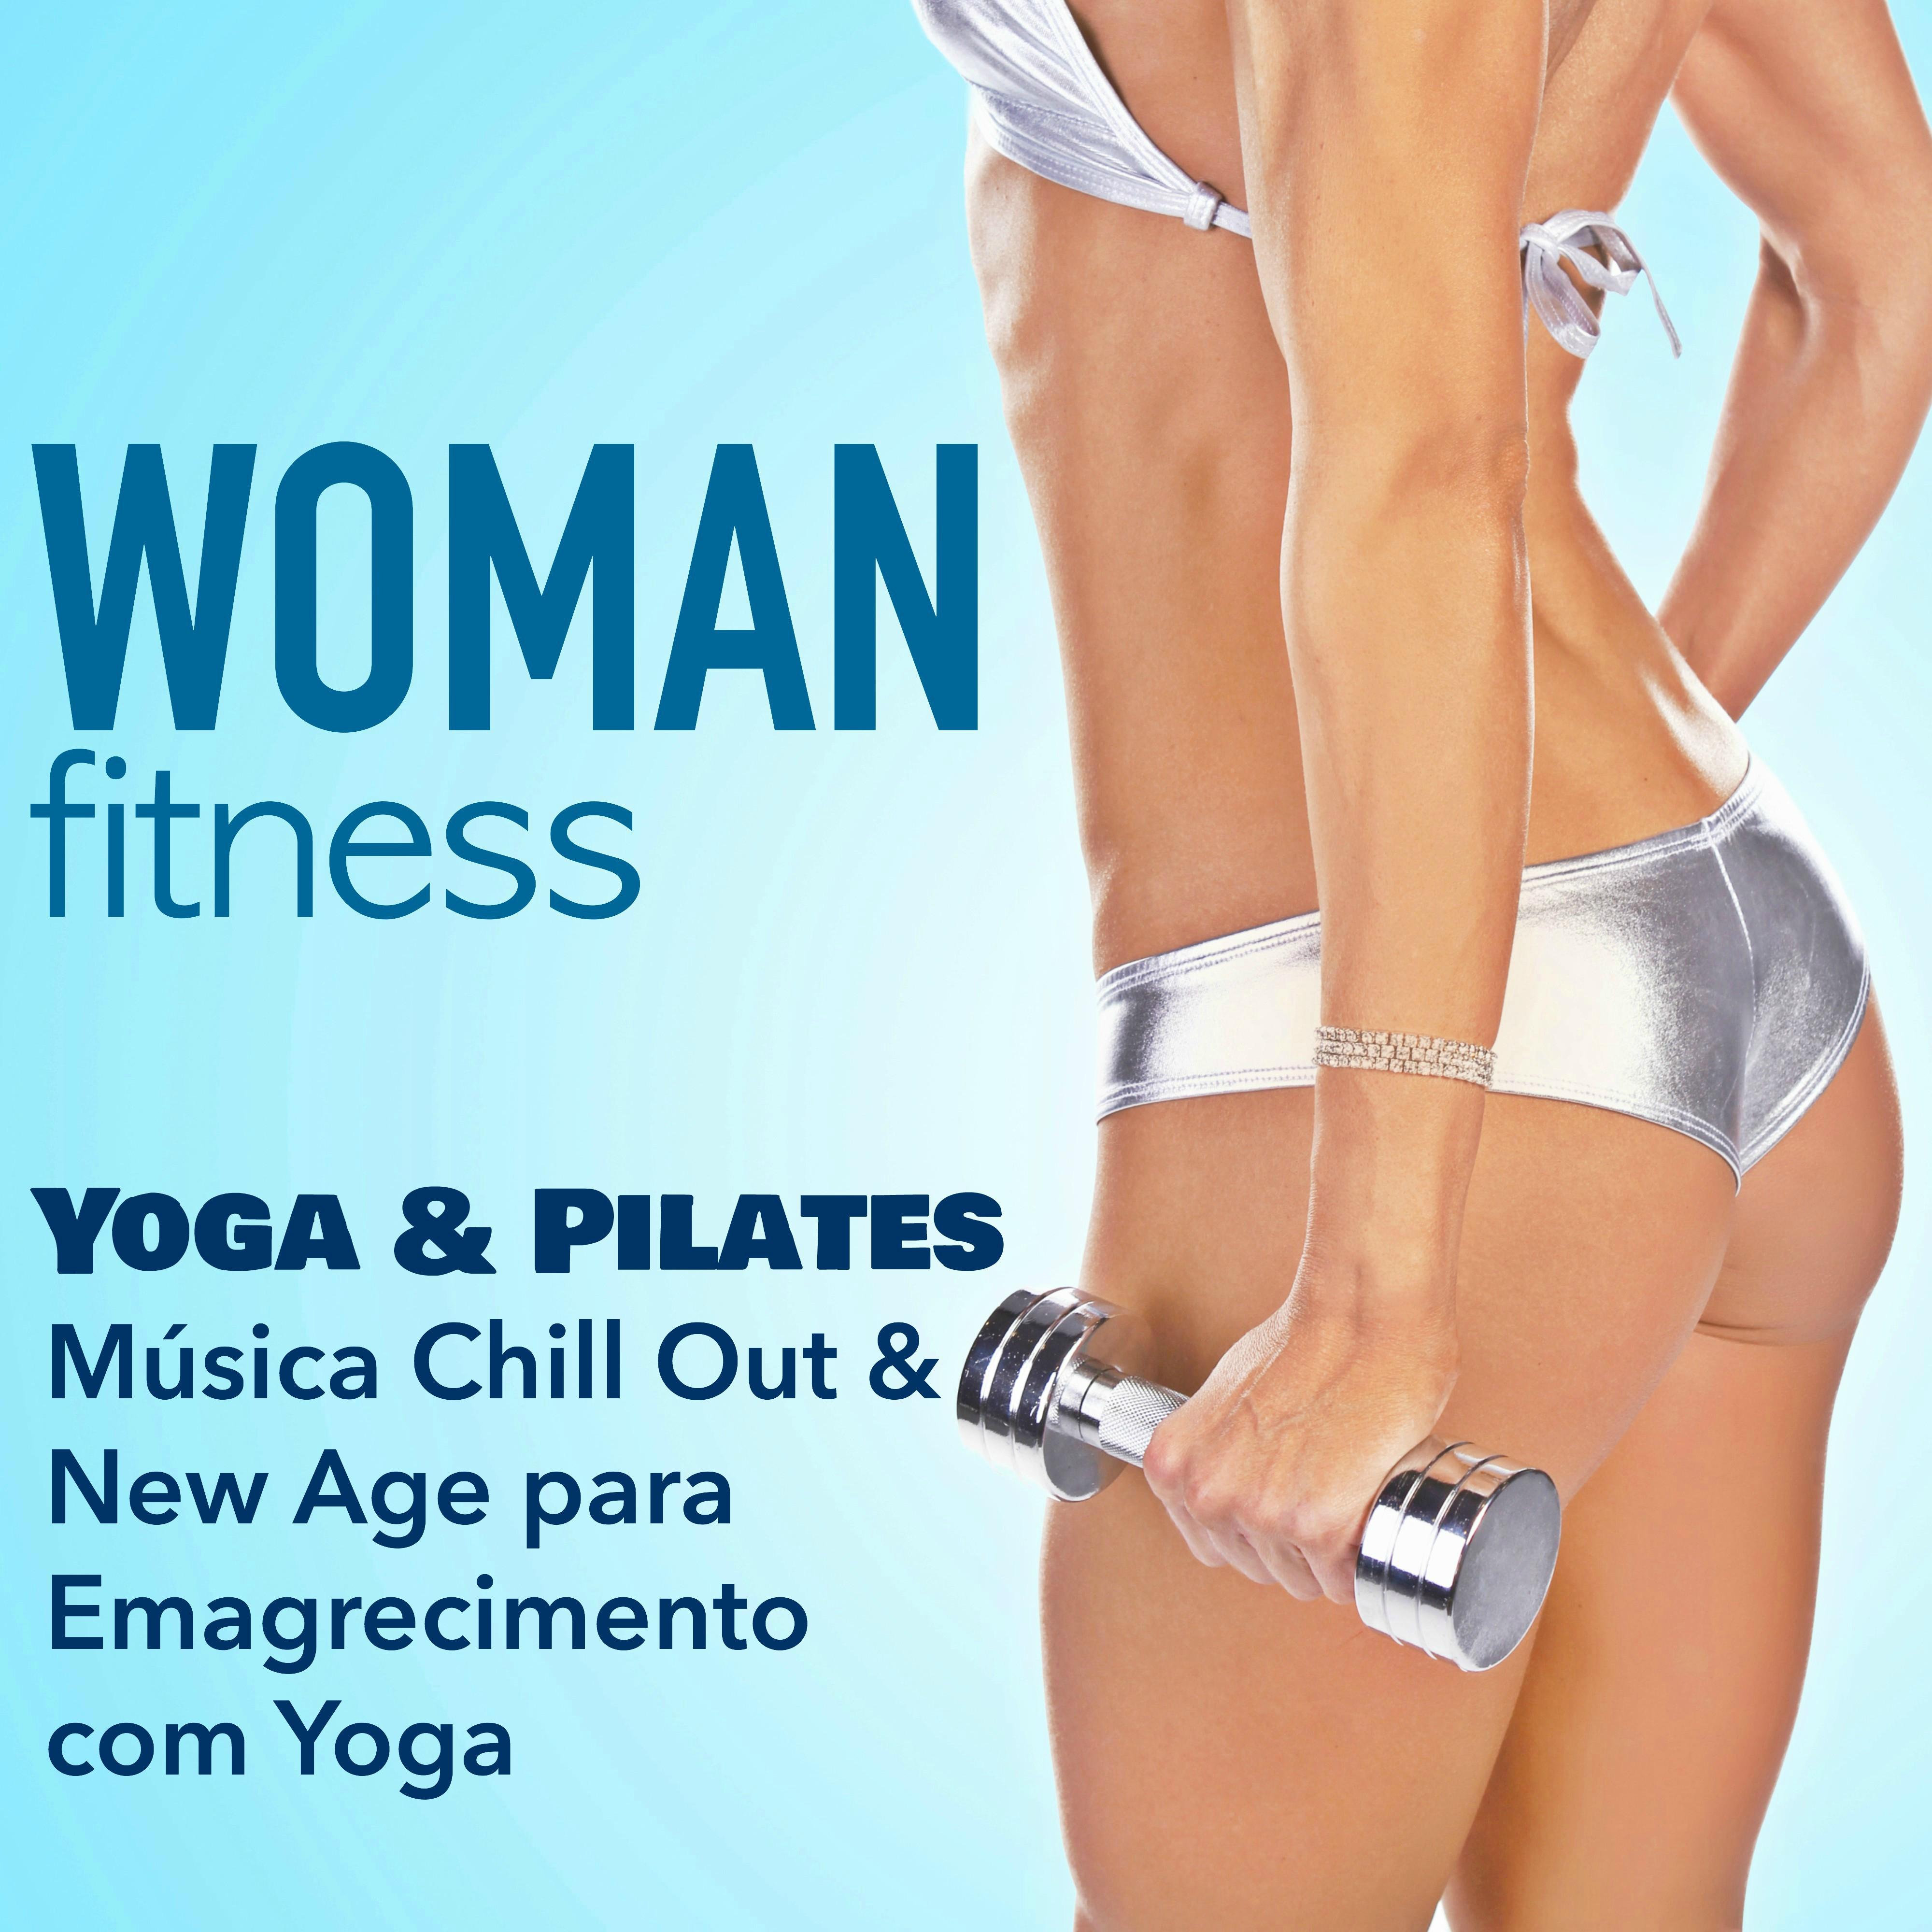 Woman Fitness  Aula de Yoga e Pilates: Mu sica Chill Out  New Age para Emagrecimento com Yoga  Treino Fitness